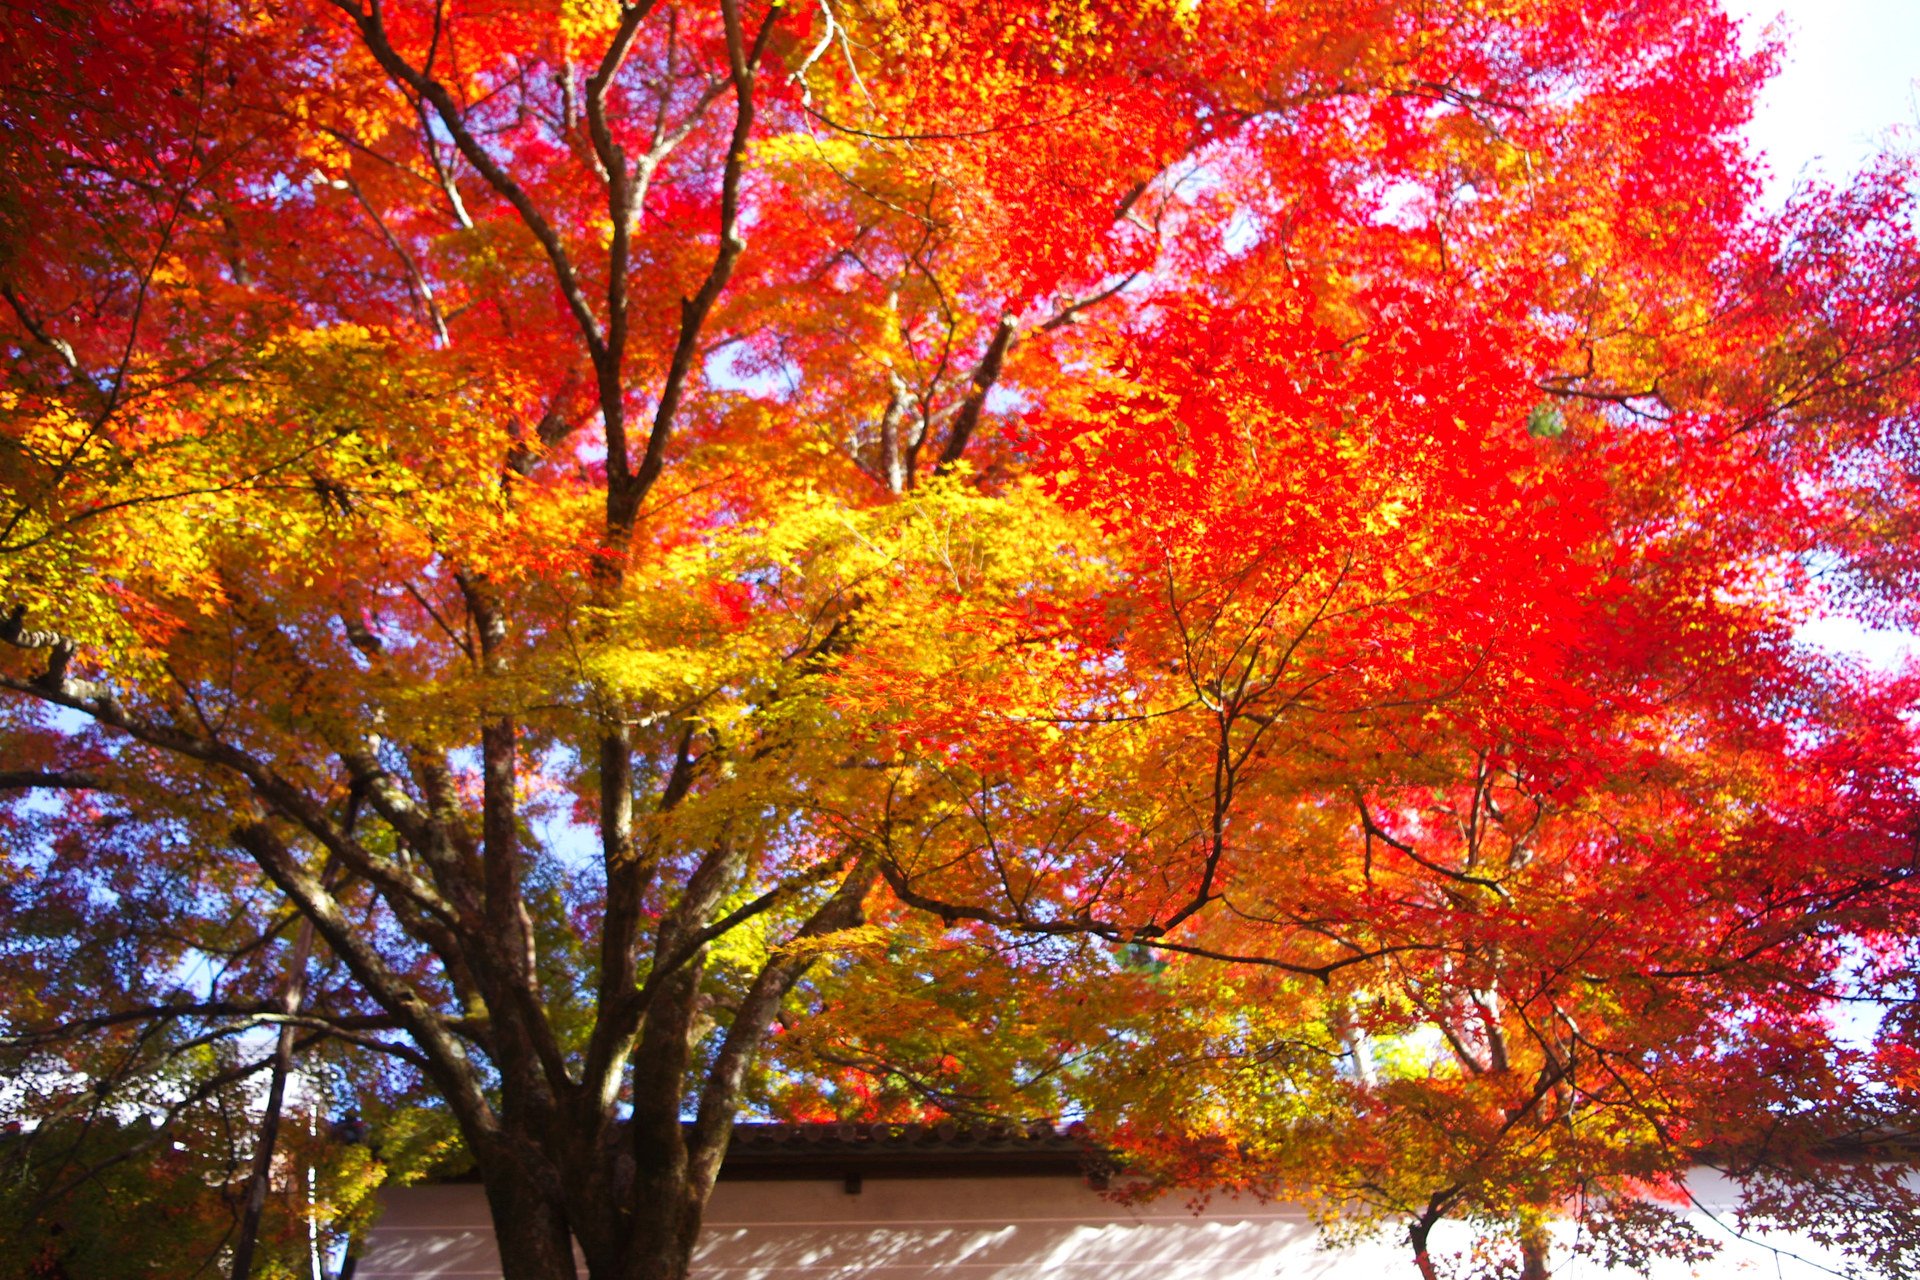 日本の風景 京の秋 曼殊院の紅葉 壁紙19x1280 壁紙館